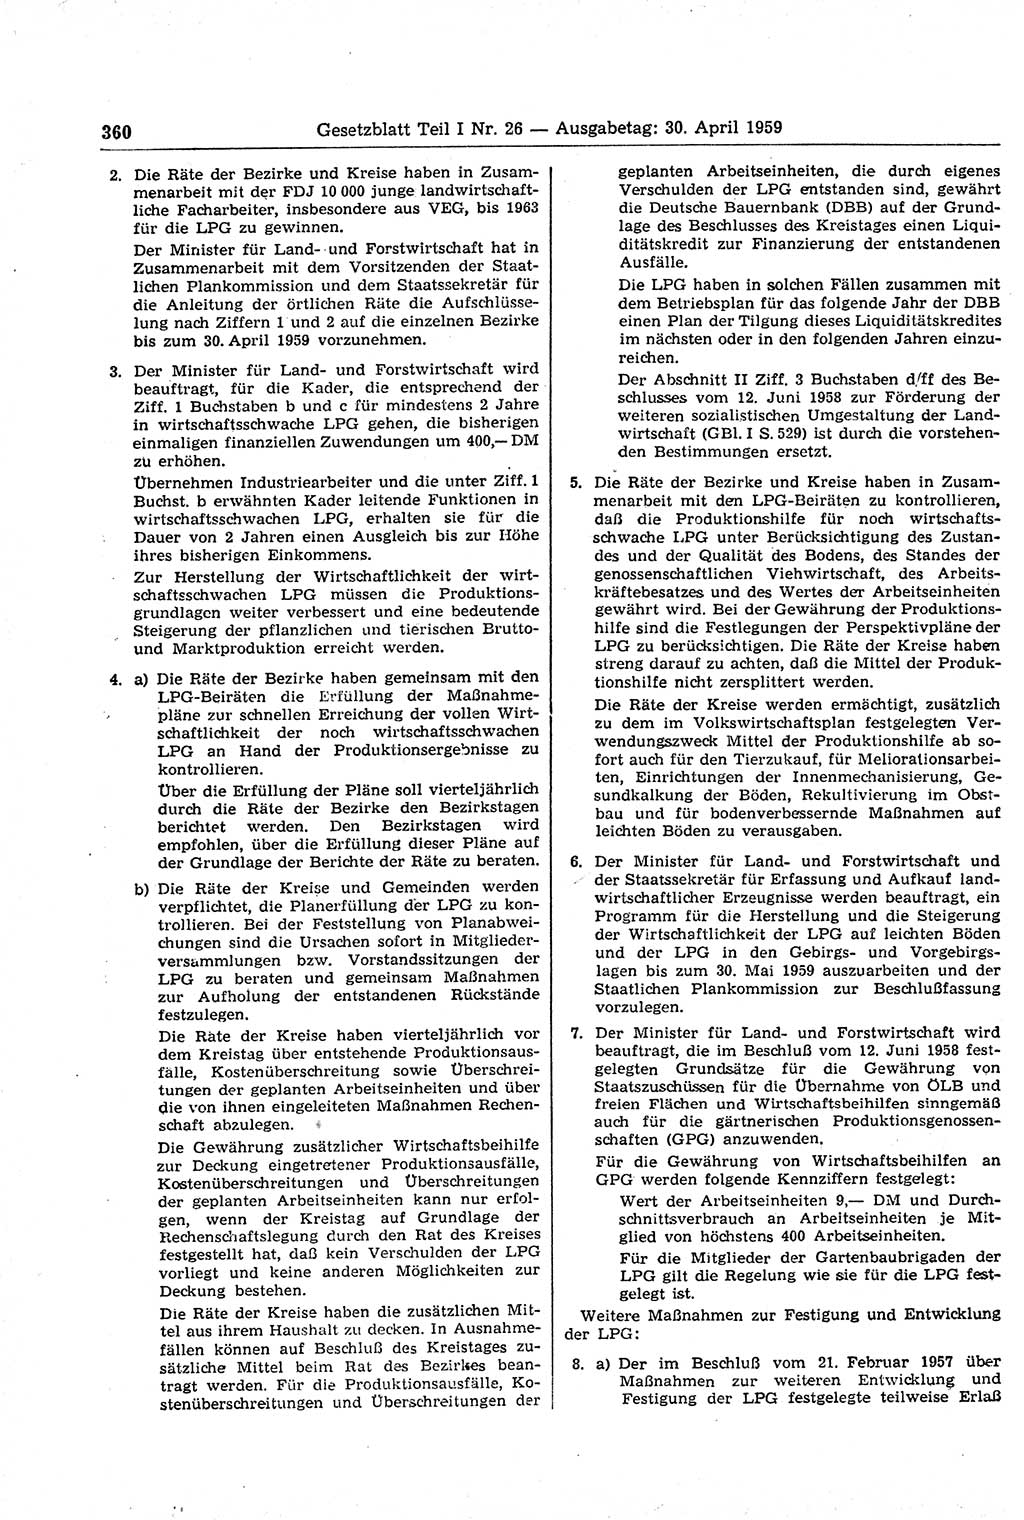 Gesetzblatt (GBl.) der Deutschen Demokratischen Republik (DDR) Teil Ⅰ 1959, Seite 360 (GBl. DDR Ⅰ 1959, S. 360)